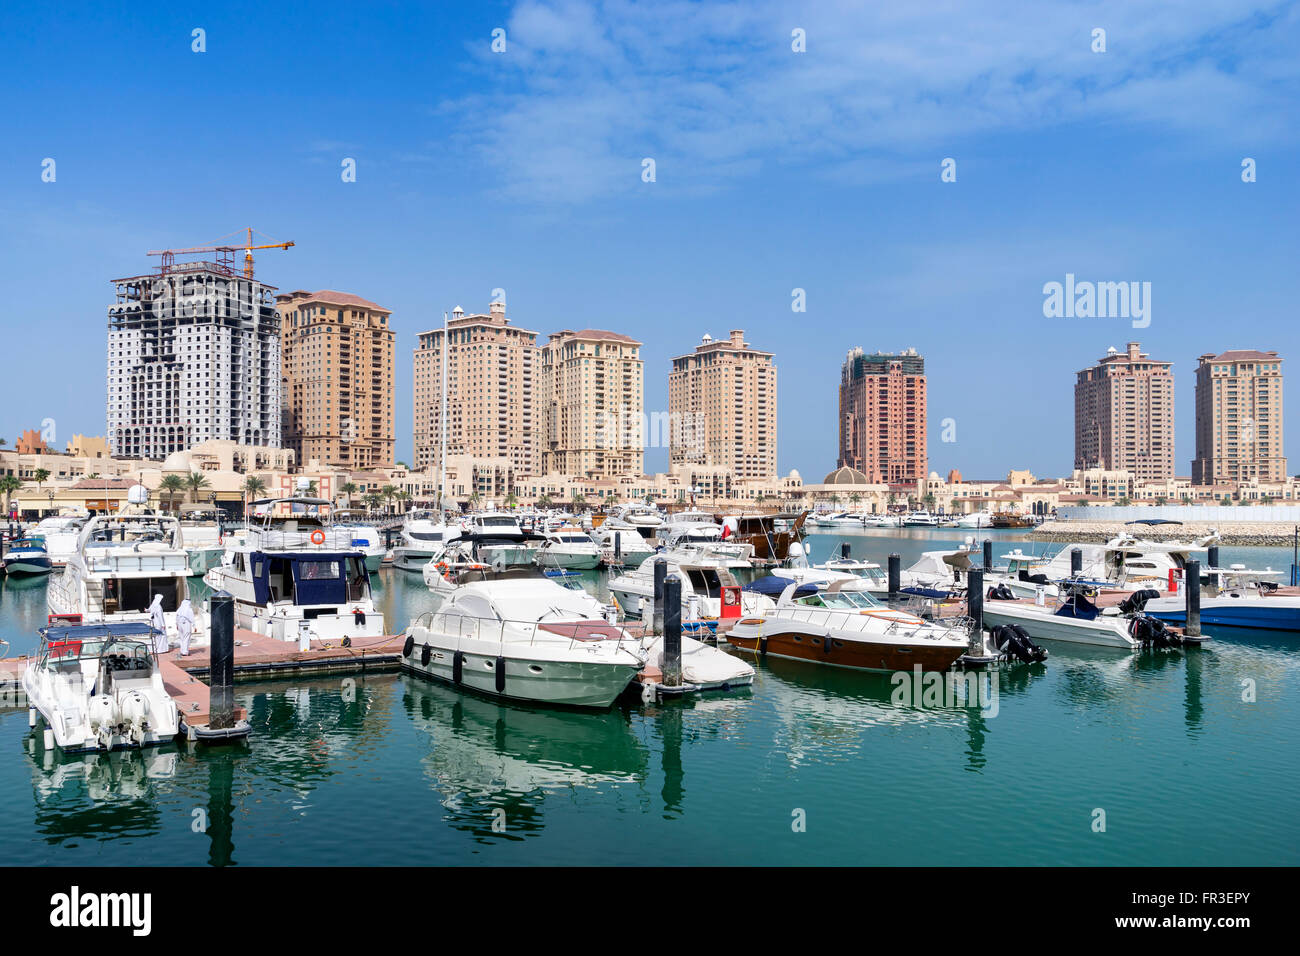 Vue sur la marina et les immeubles à appartements de luxe au Pearl nouveau développement immobilier résidentiel à Doha Qatar Banque D'Images